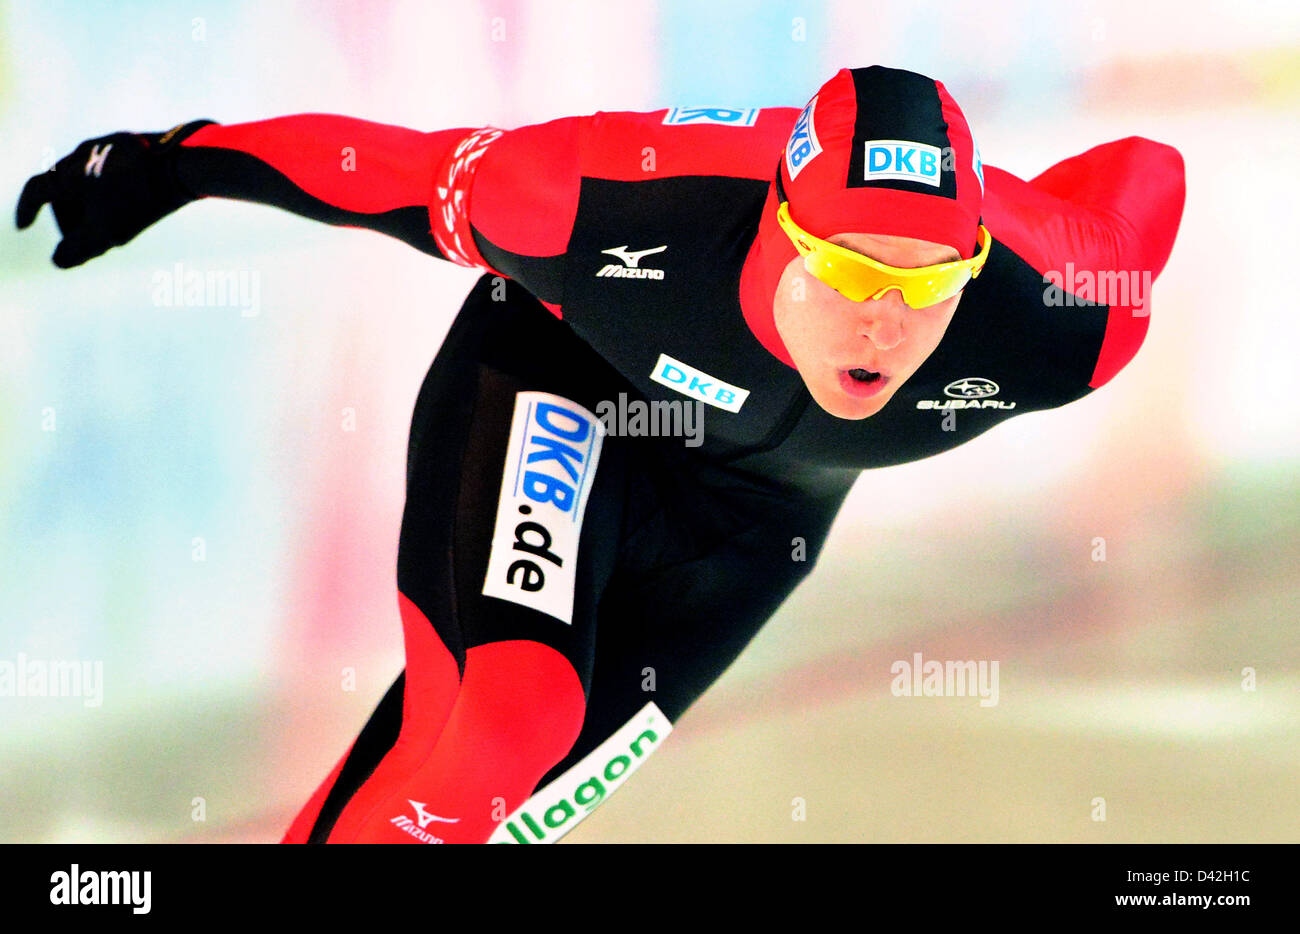 Die deutschen Ice-Eisschnellläuferin beginnt Nico Ihle am Eis-Eisschnelllauf-Weltcup über 1000 m in Erfurt, Deutschland, 2. Februar 2013. Foto: MARTIN SCHUTT Stockfoto